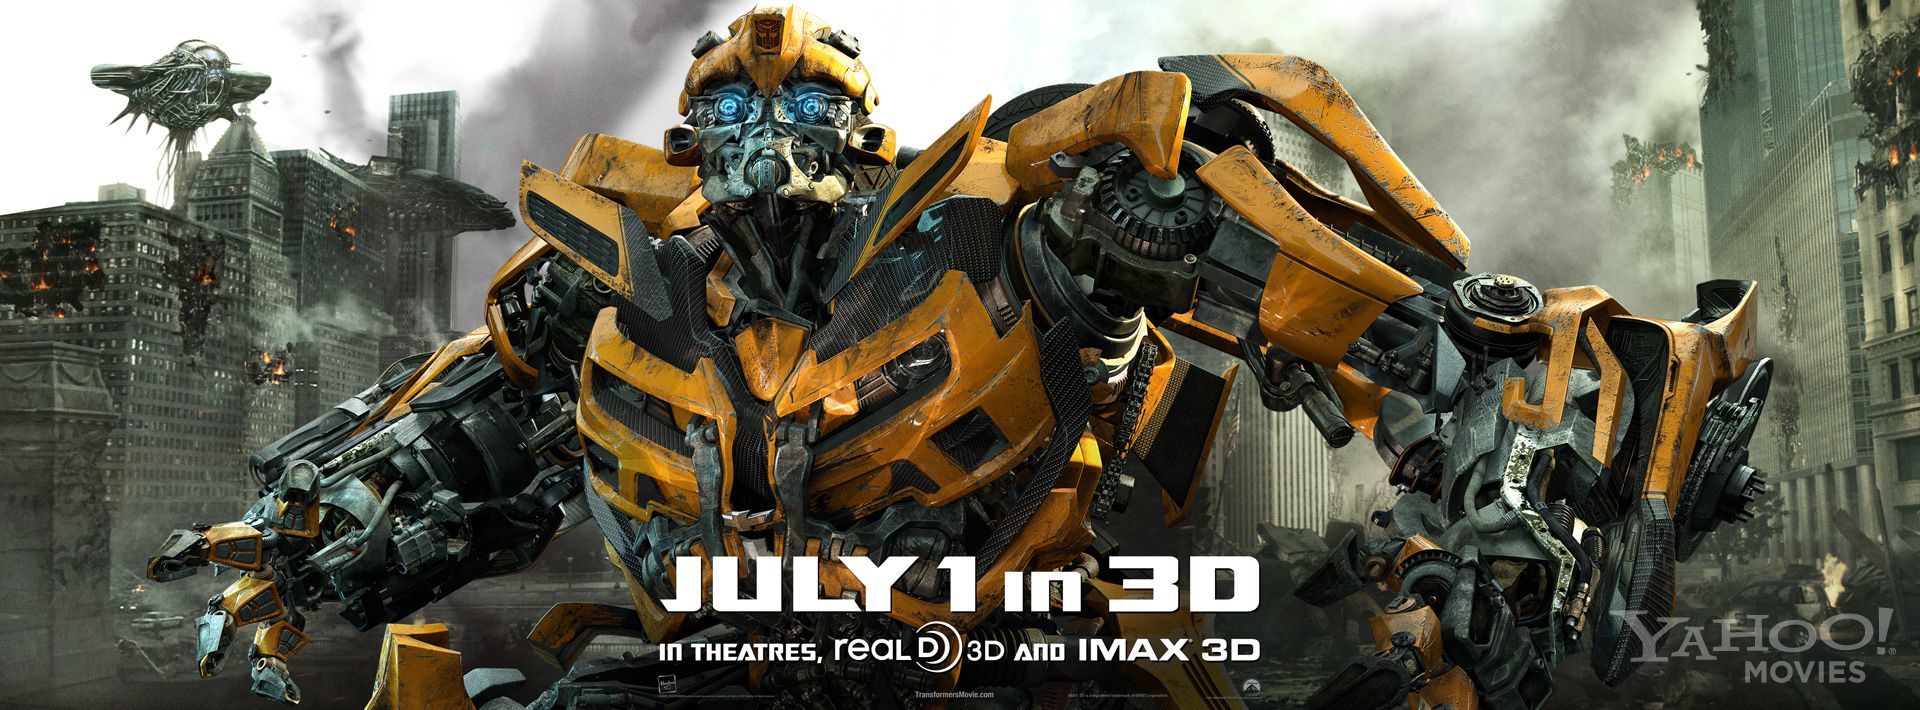 Quadrilogia Transformers 1080p Bluray Dublado – Torrent DownloadTransformers 1, 2, 3 e 4 BRRip BDRip DualAudio (2014)